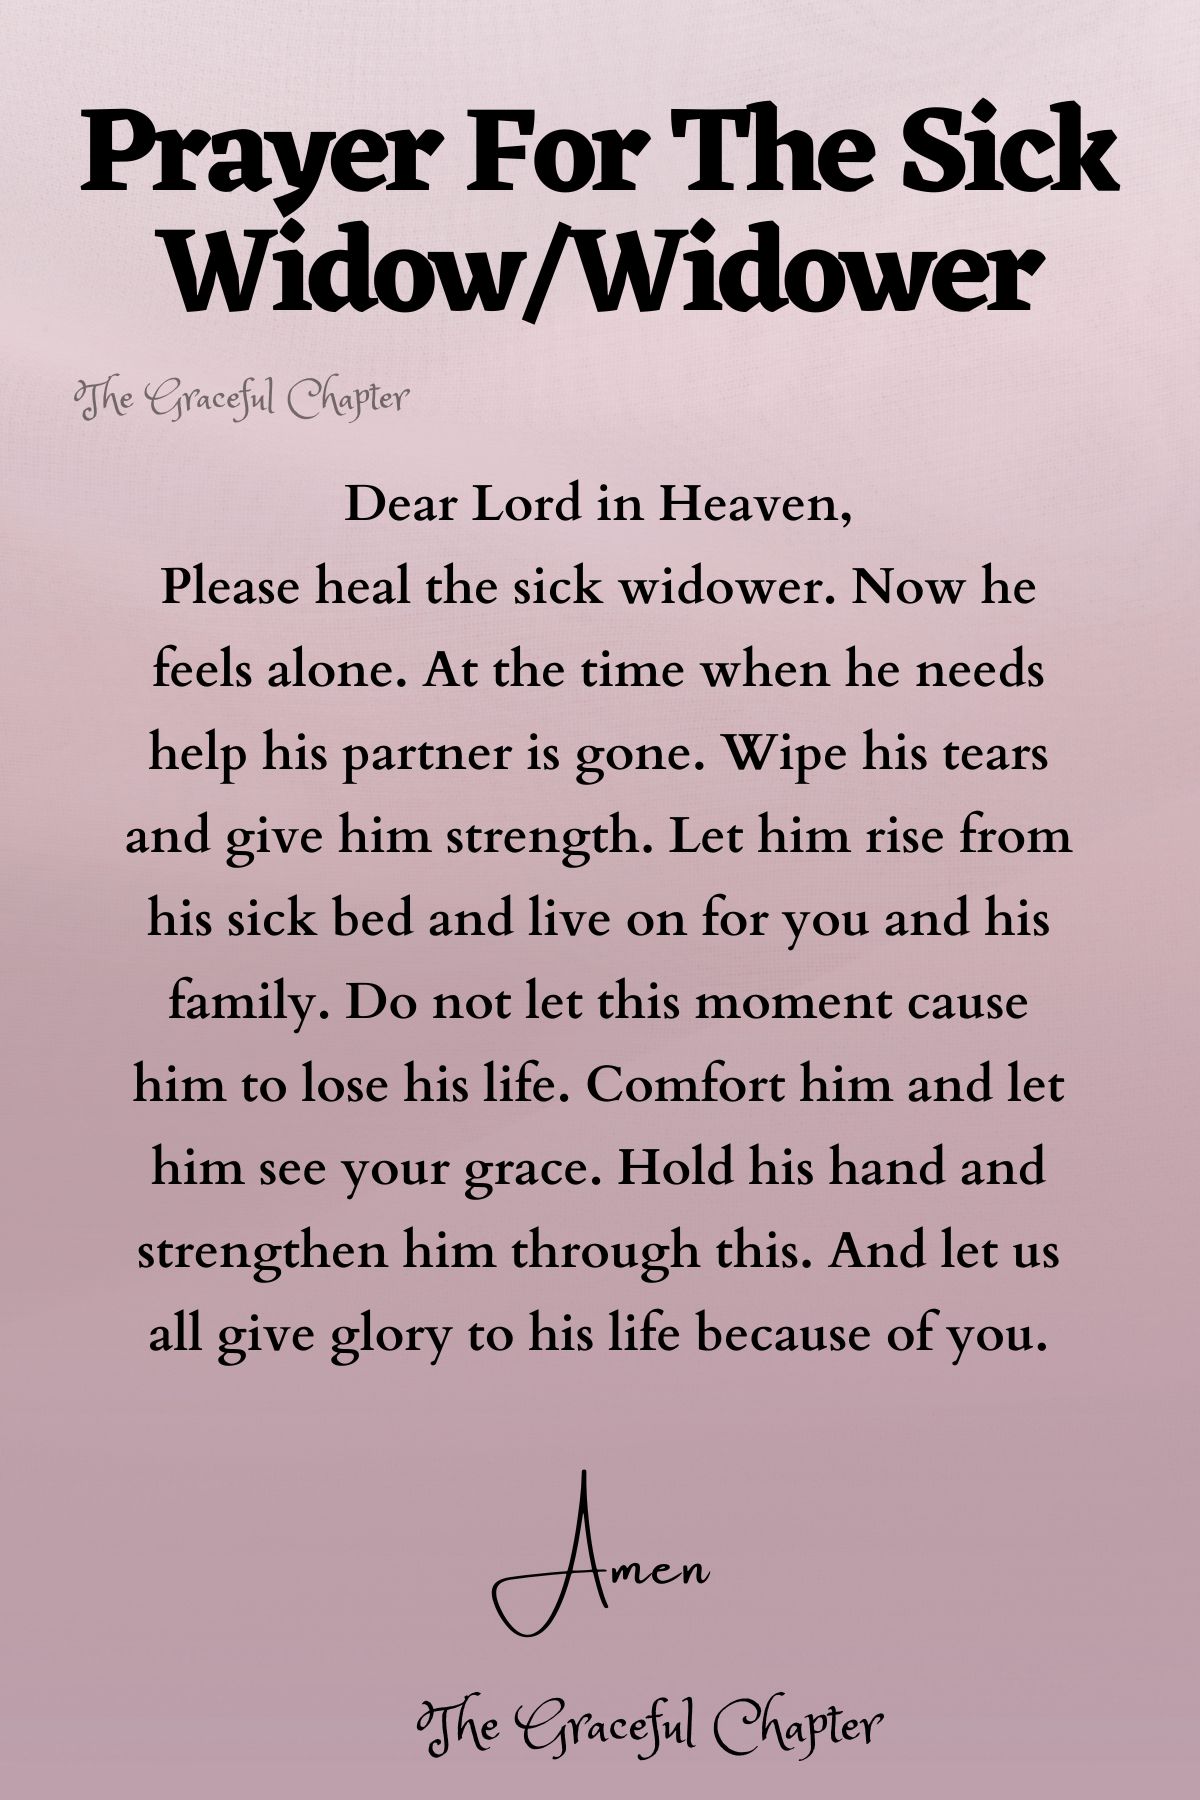 Prayer for the sick widow/widower